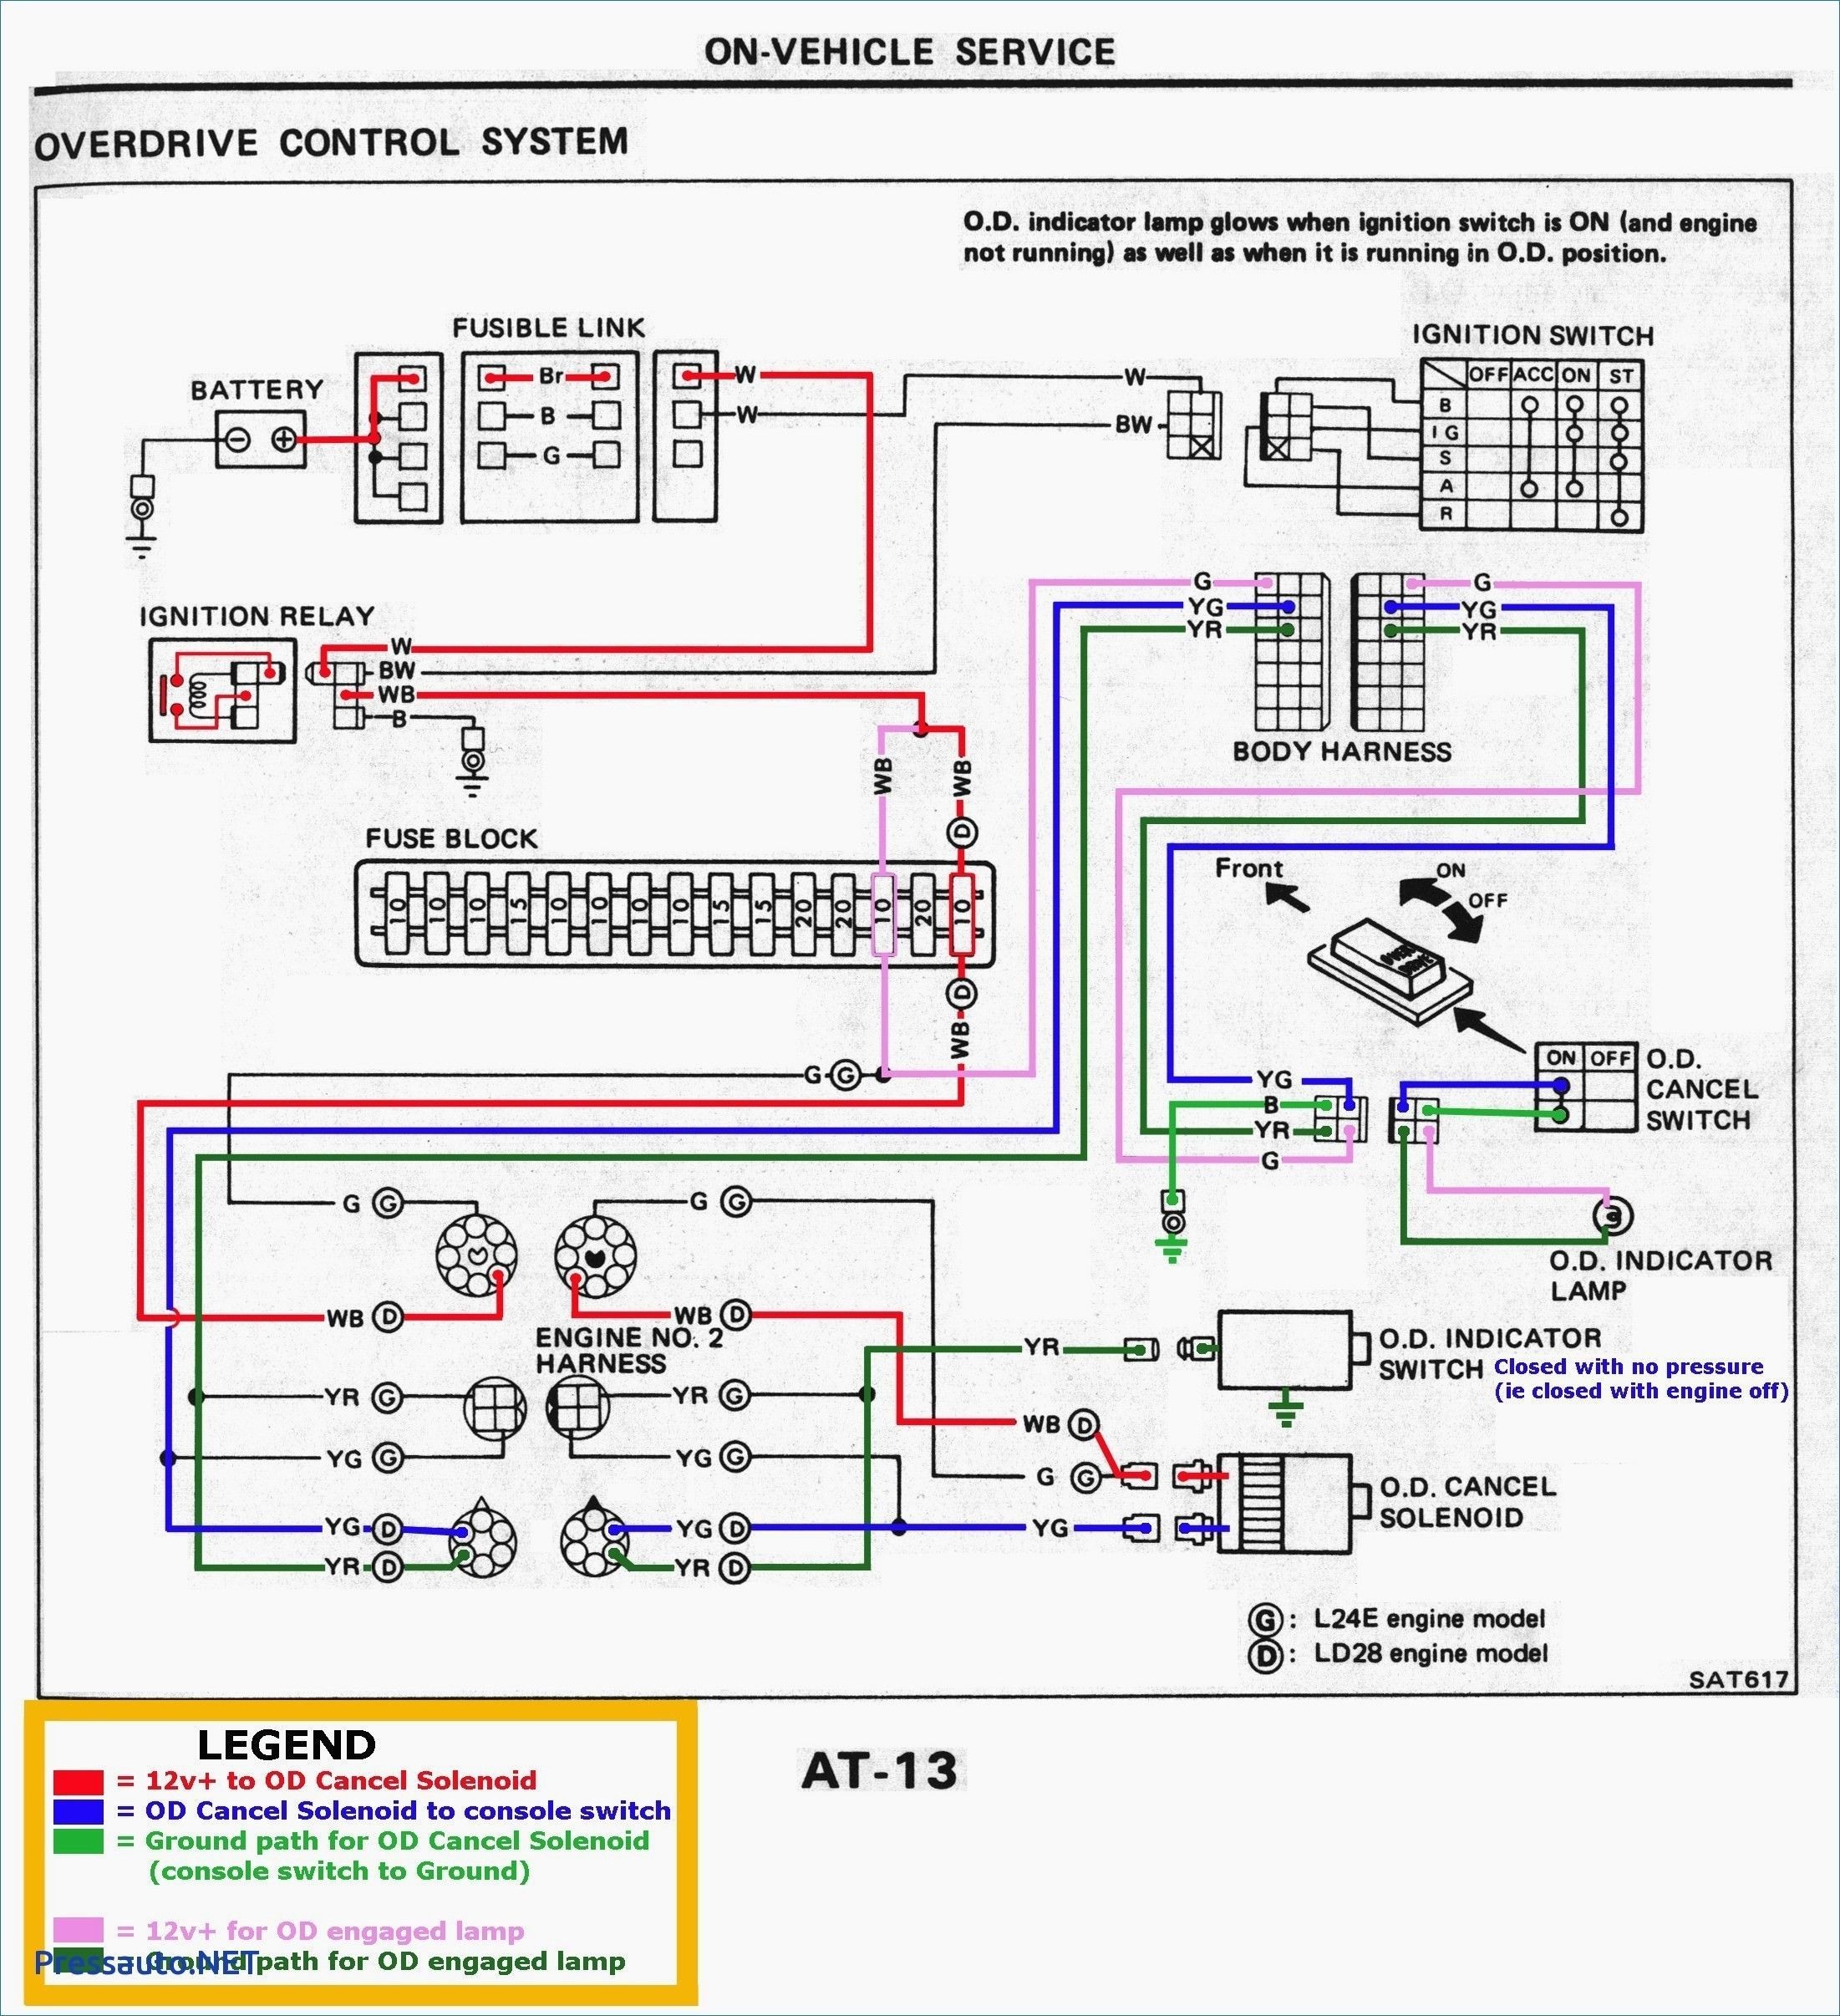 Electronic Choke Wiring Diagram New Bmw E46 M43 Wiring Diagram Of Electronic Choke Wiring Diagram